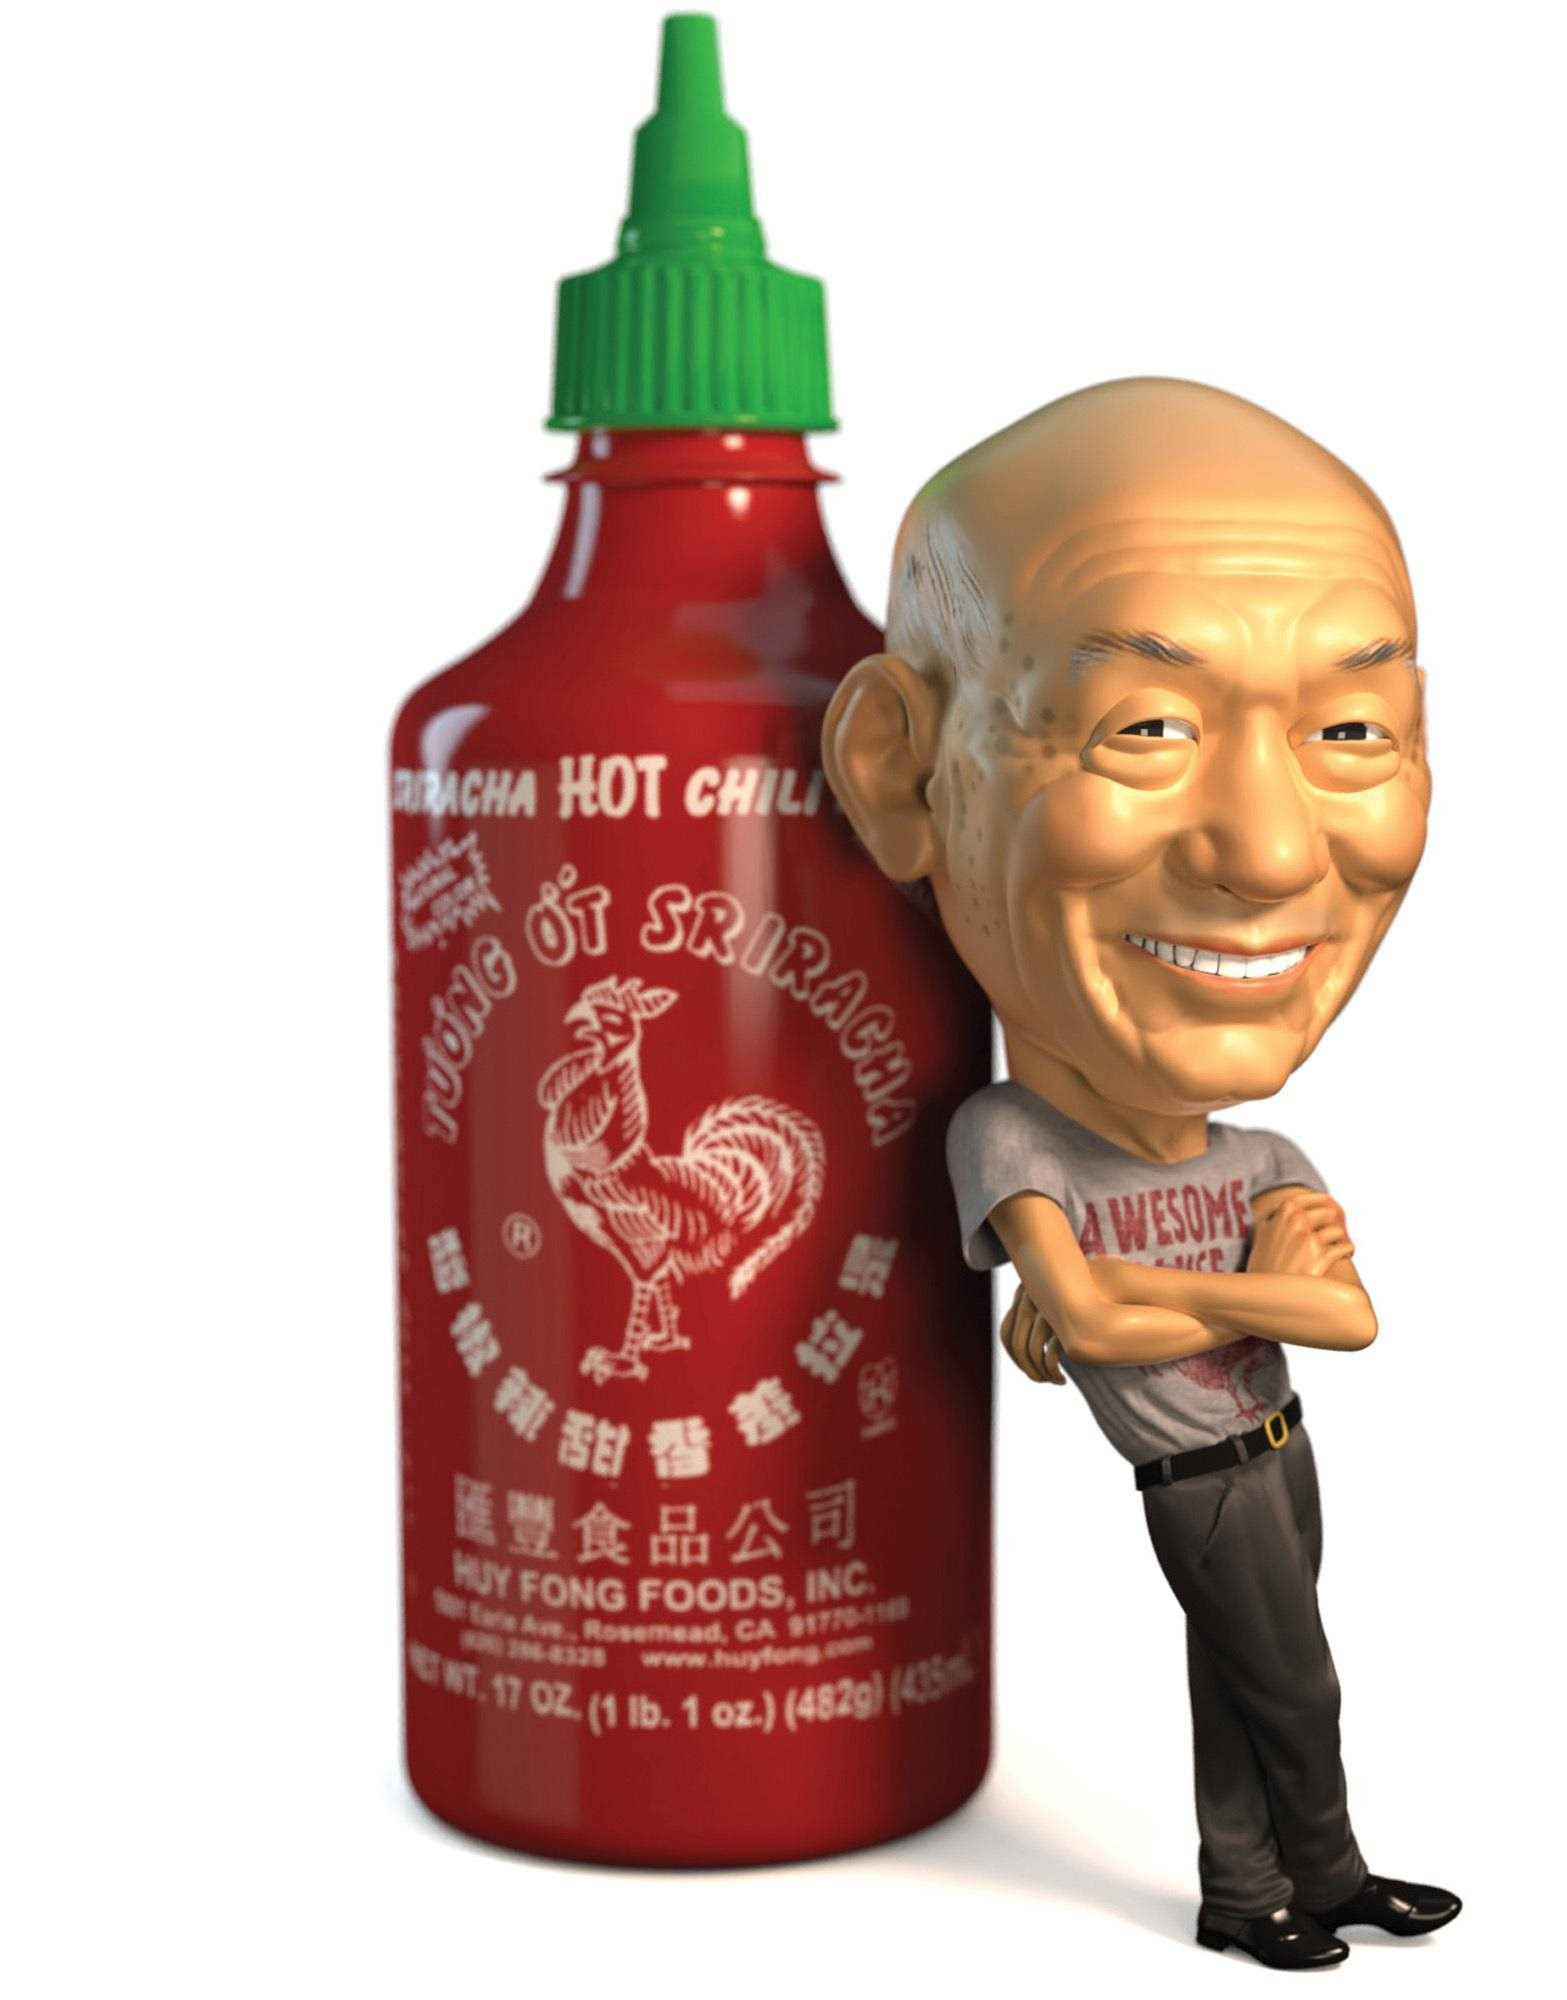 Vua tương ớt gốc Việt chính thức trở thành tỷ phú đôla: Không tốn 1 xu quảng cáo, 40 năm không tăng giá bán buôn, âm thầm đưa Sriracha lên bàn ăn khắp thế giới - ảnh 1